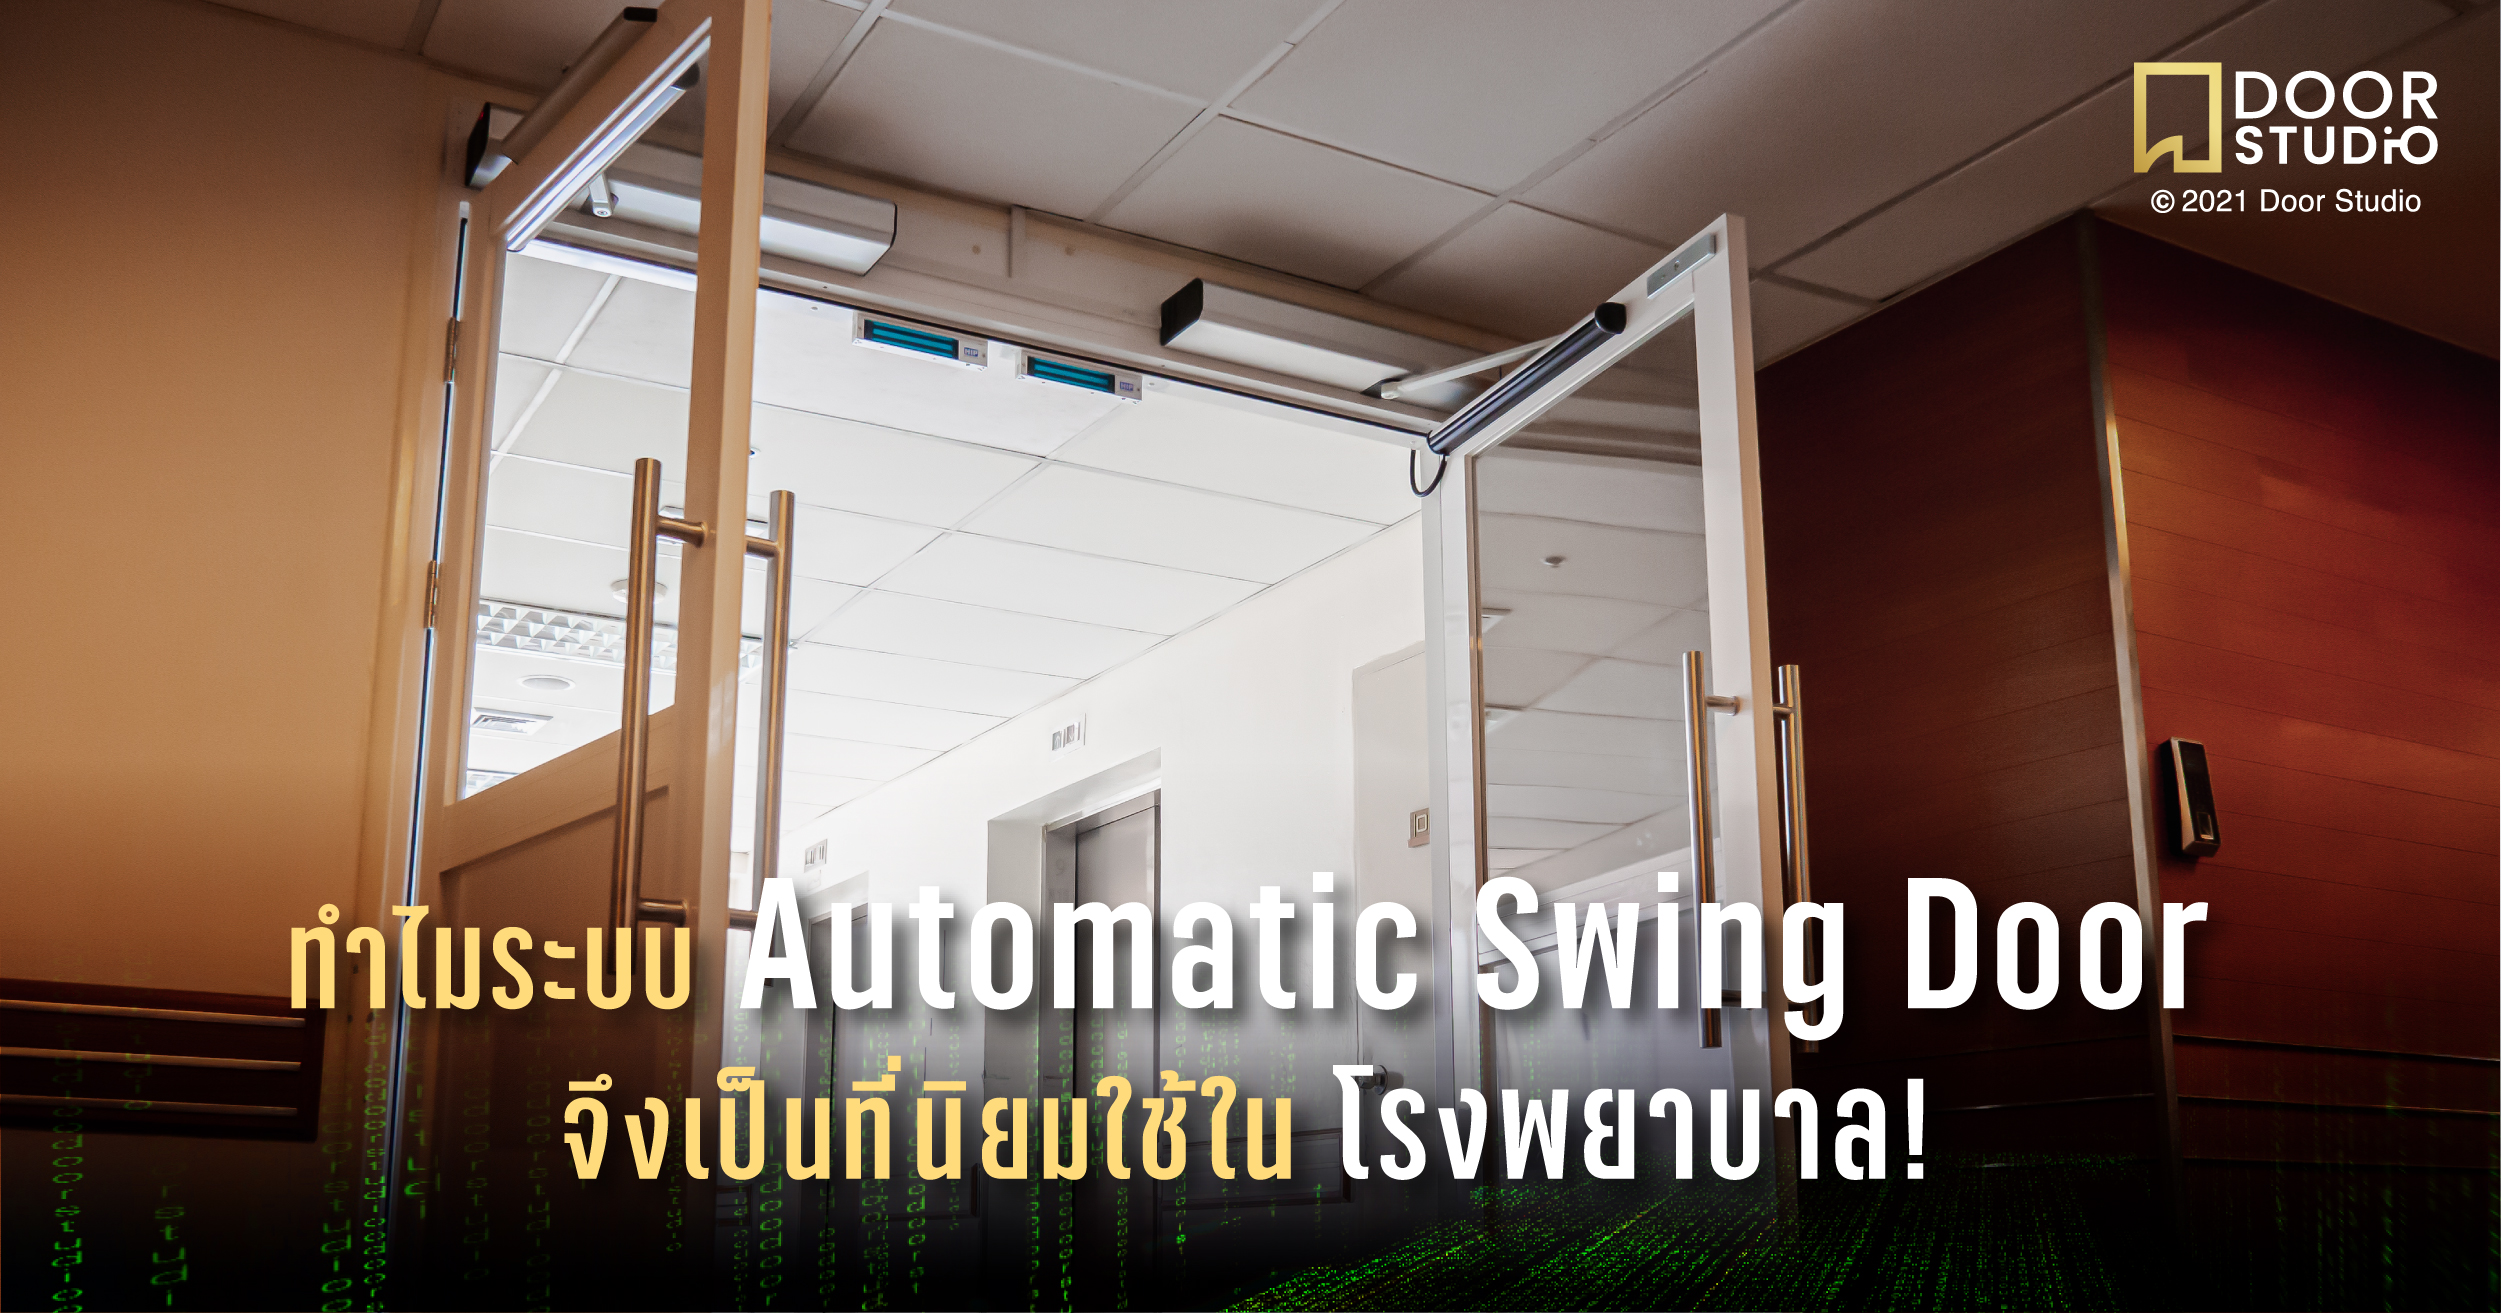 ทำไมระบบ Automatic Swing Door จึงเป็นที่นิยมใช้ในโรงพยาบาล!